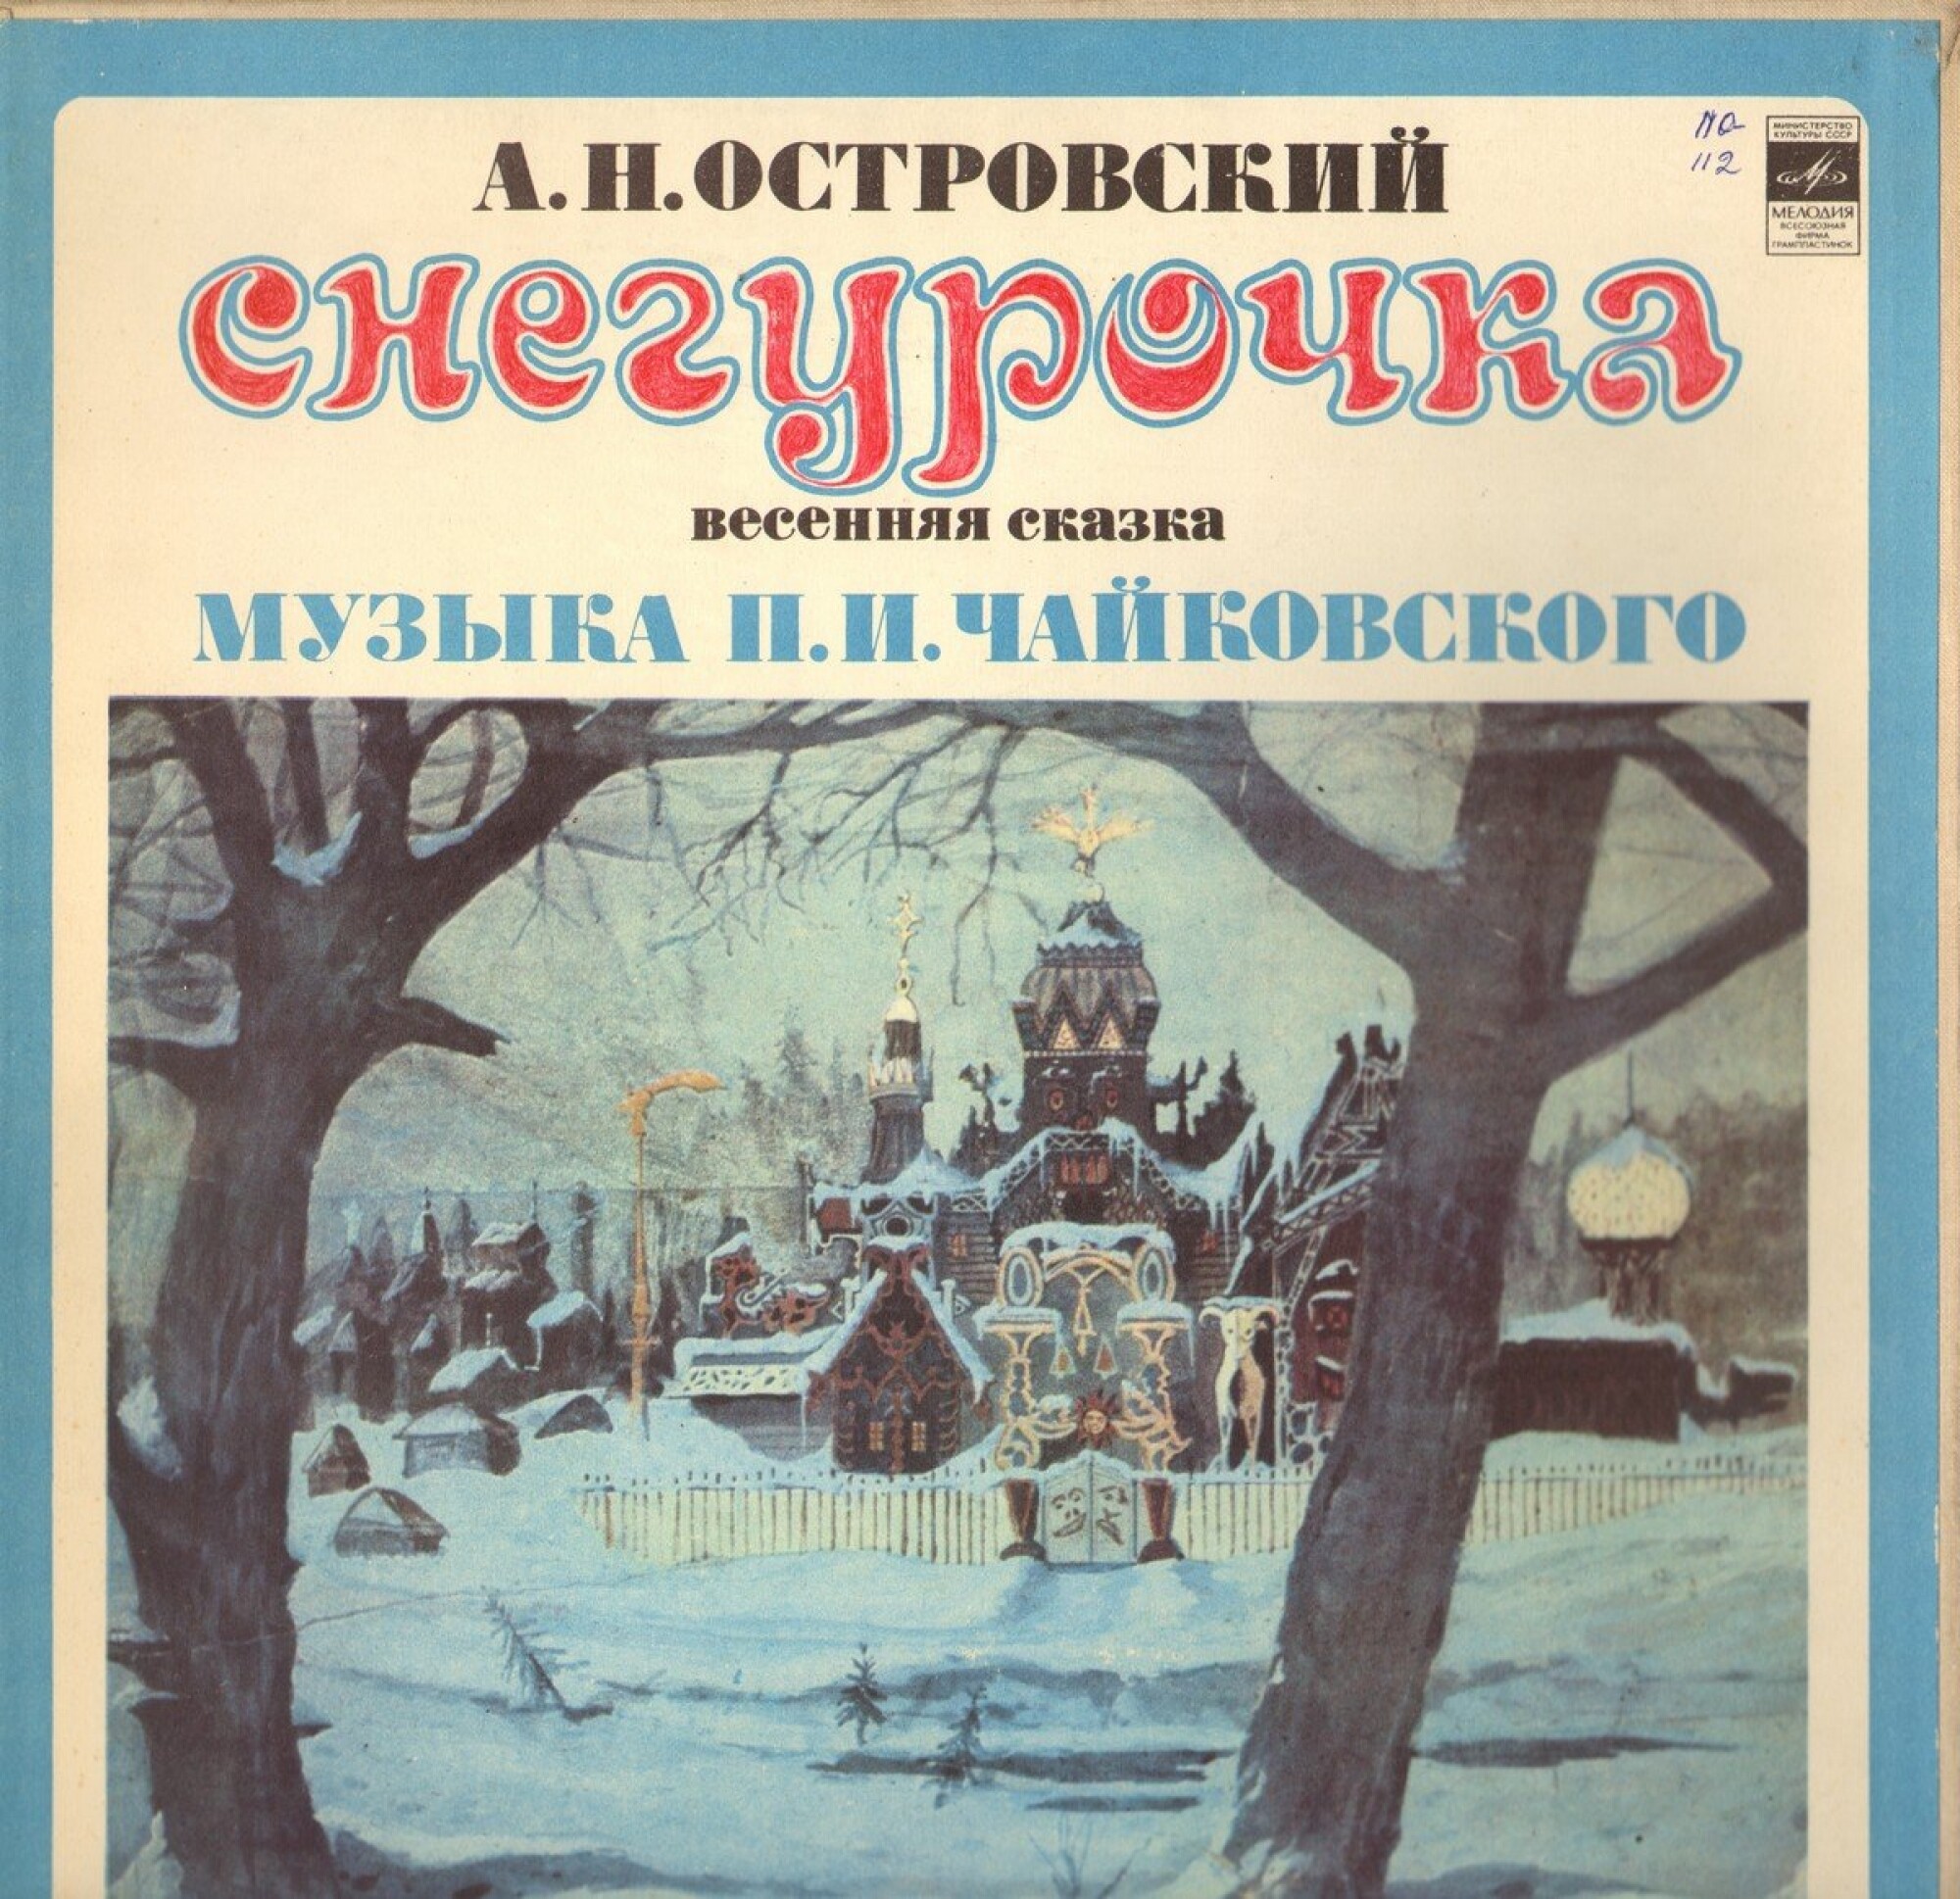 А. ОСТРОВСКИЙ (1823—1886) Снегурочка, весенняя сказка в четырех действиях с прологом (музыка П. Чайковского)